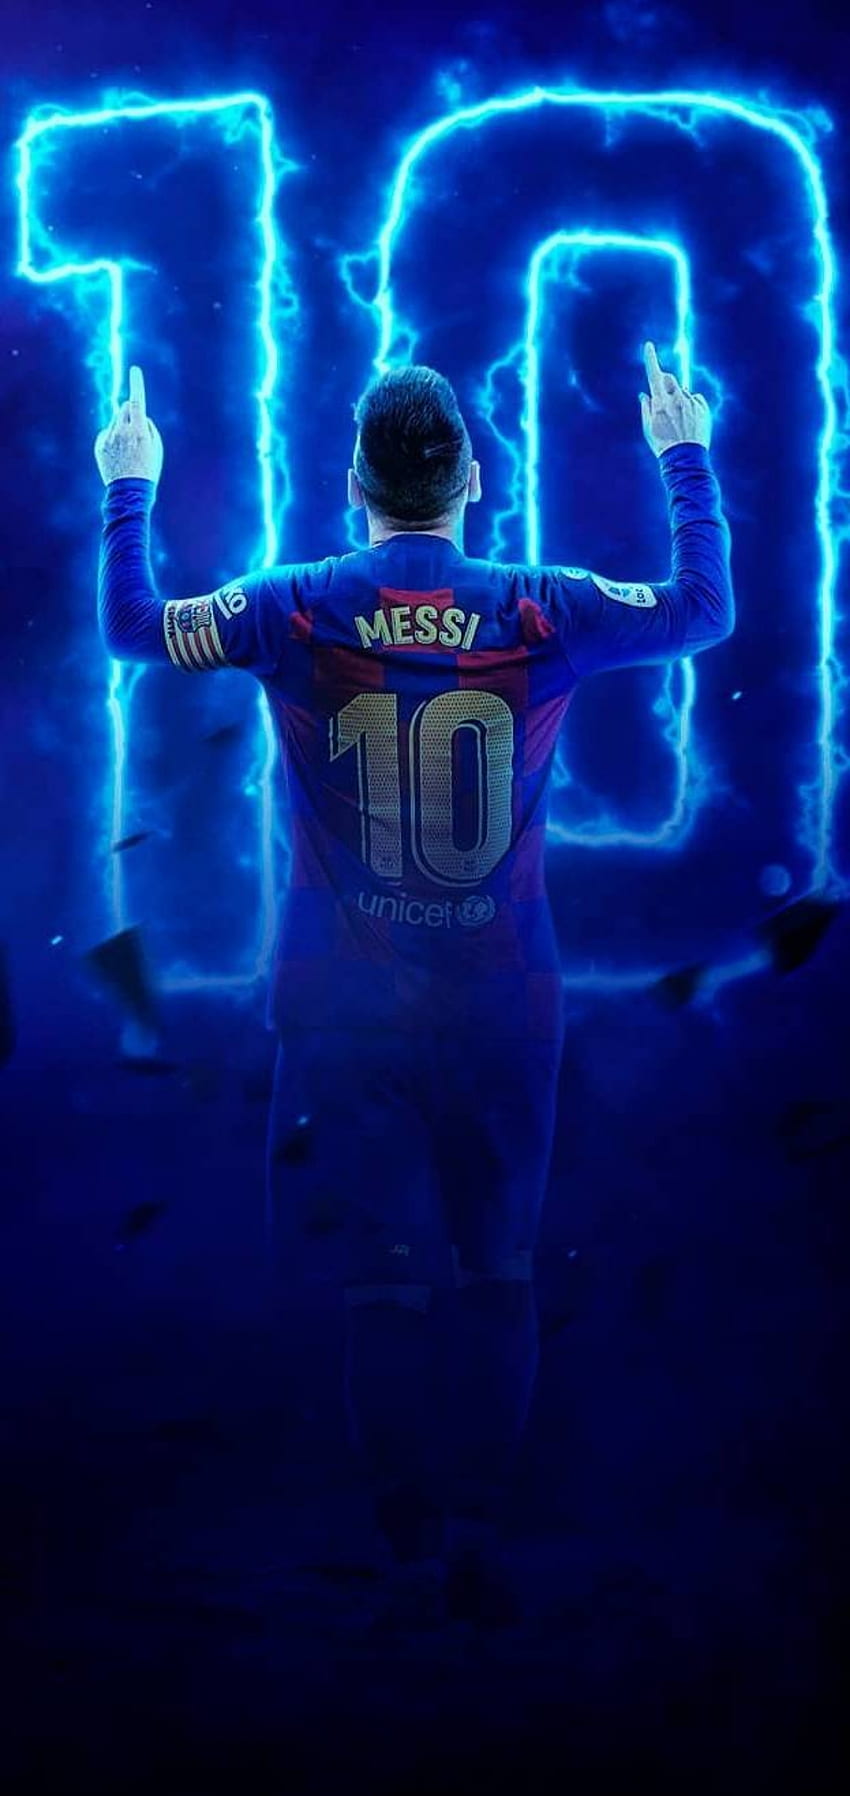 Với hơn 65 hình nền điện thoại của Messi, bạn sẽ có thể thỏa sức lựa chọn cho mình những bức ảnh đẹp nhất. Chất lượng HD mang đến cho bạn những màu sắc trung thực và sắc nét, tạo thành những hình nền tuyệt đẹp, đầy tính nghệ thuật. Hãy lựa chọn cho mình một bức hình yêu thích để thể hiện tình yêu với Messi.